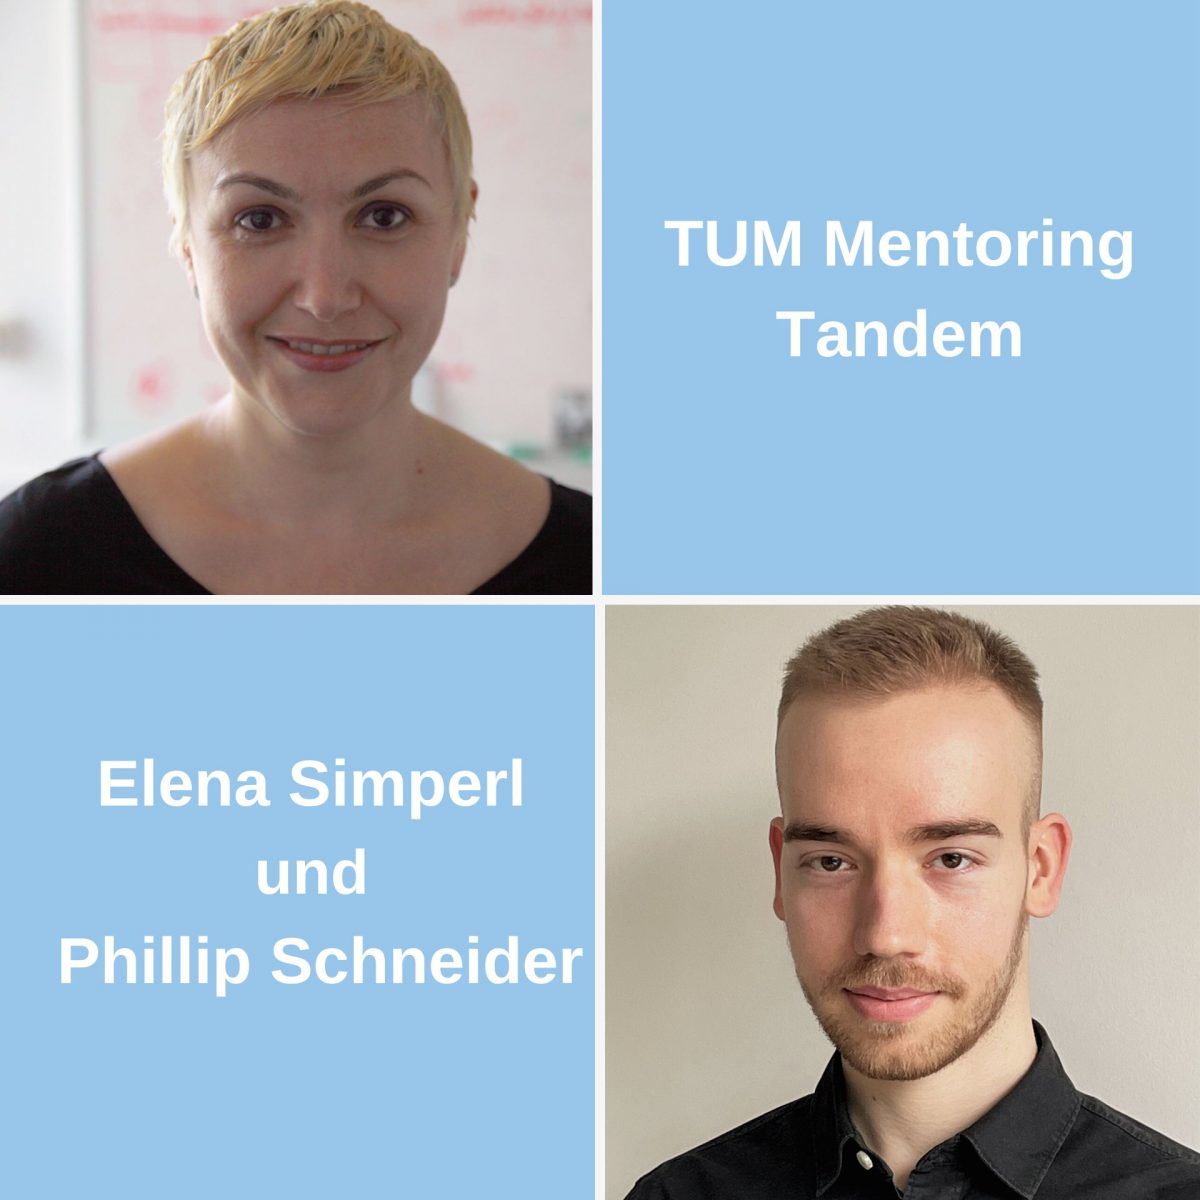 TUM Alumna und Mentorin Prof. Dr. Elena Simperl und TUM Alumnus und Mentee Phillip Schneider.